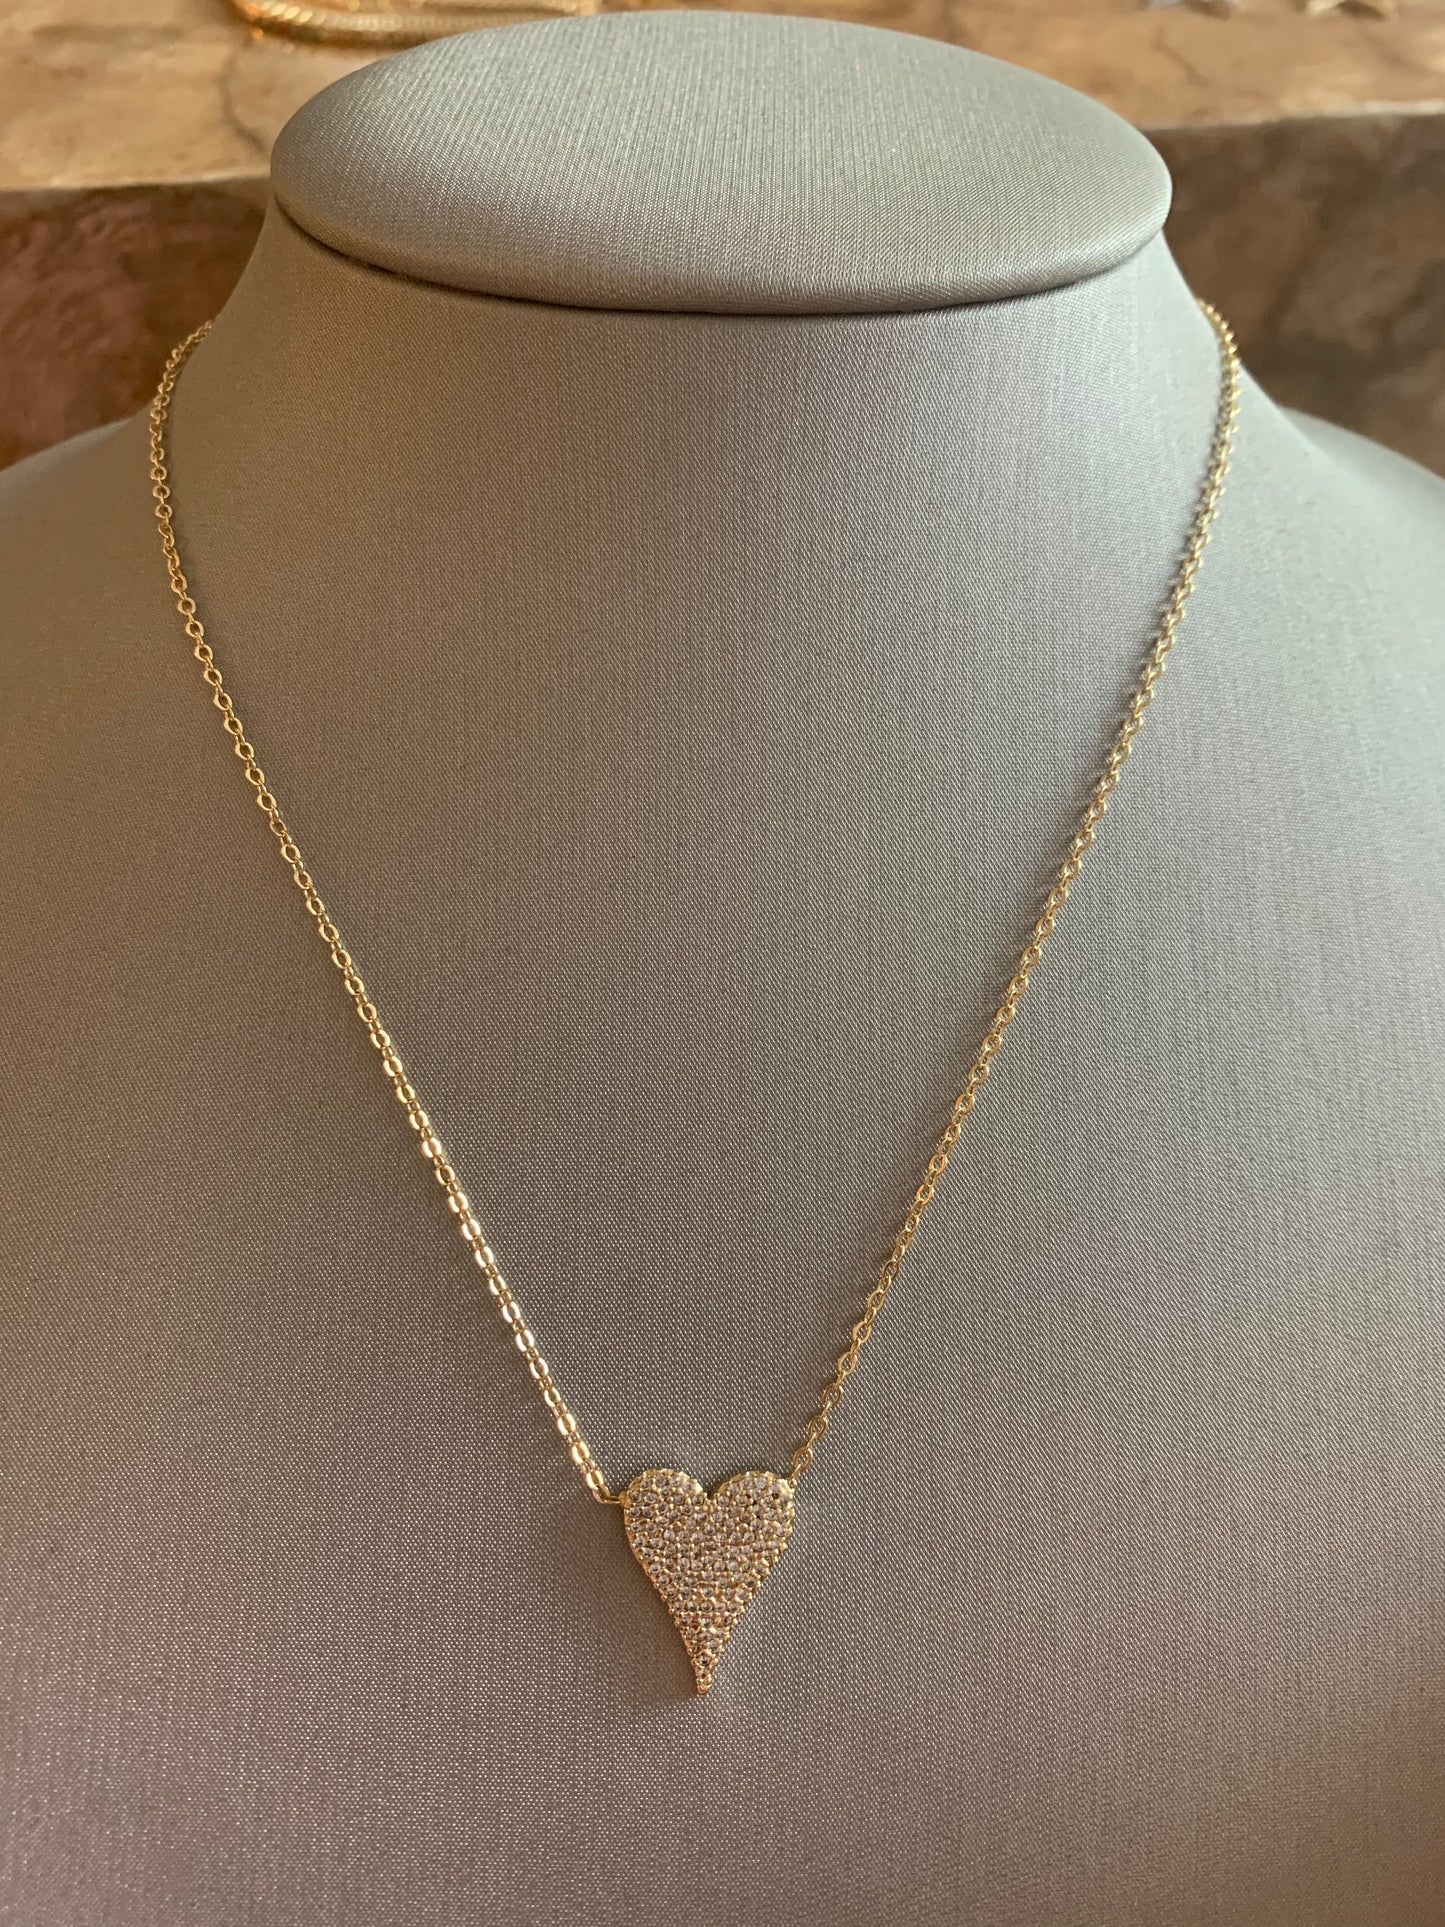 CZ Heart Shaped Pendant Necklace